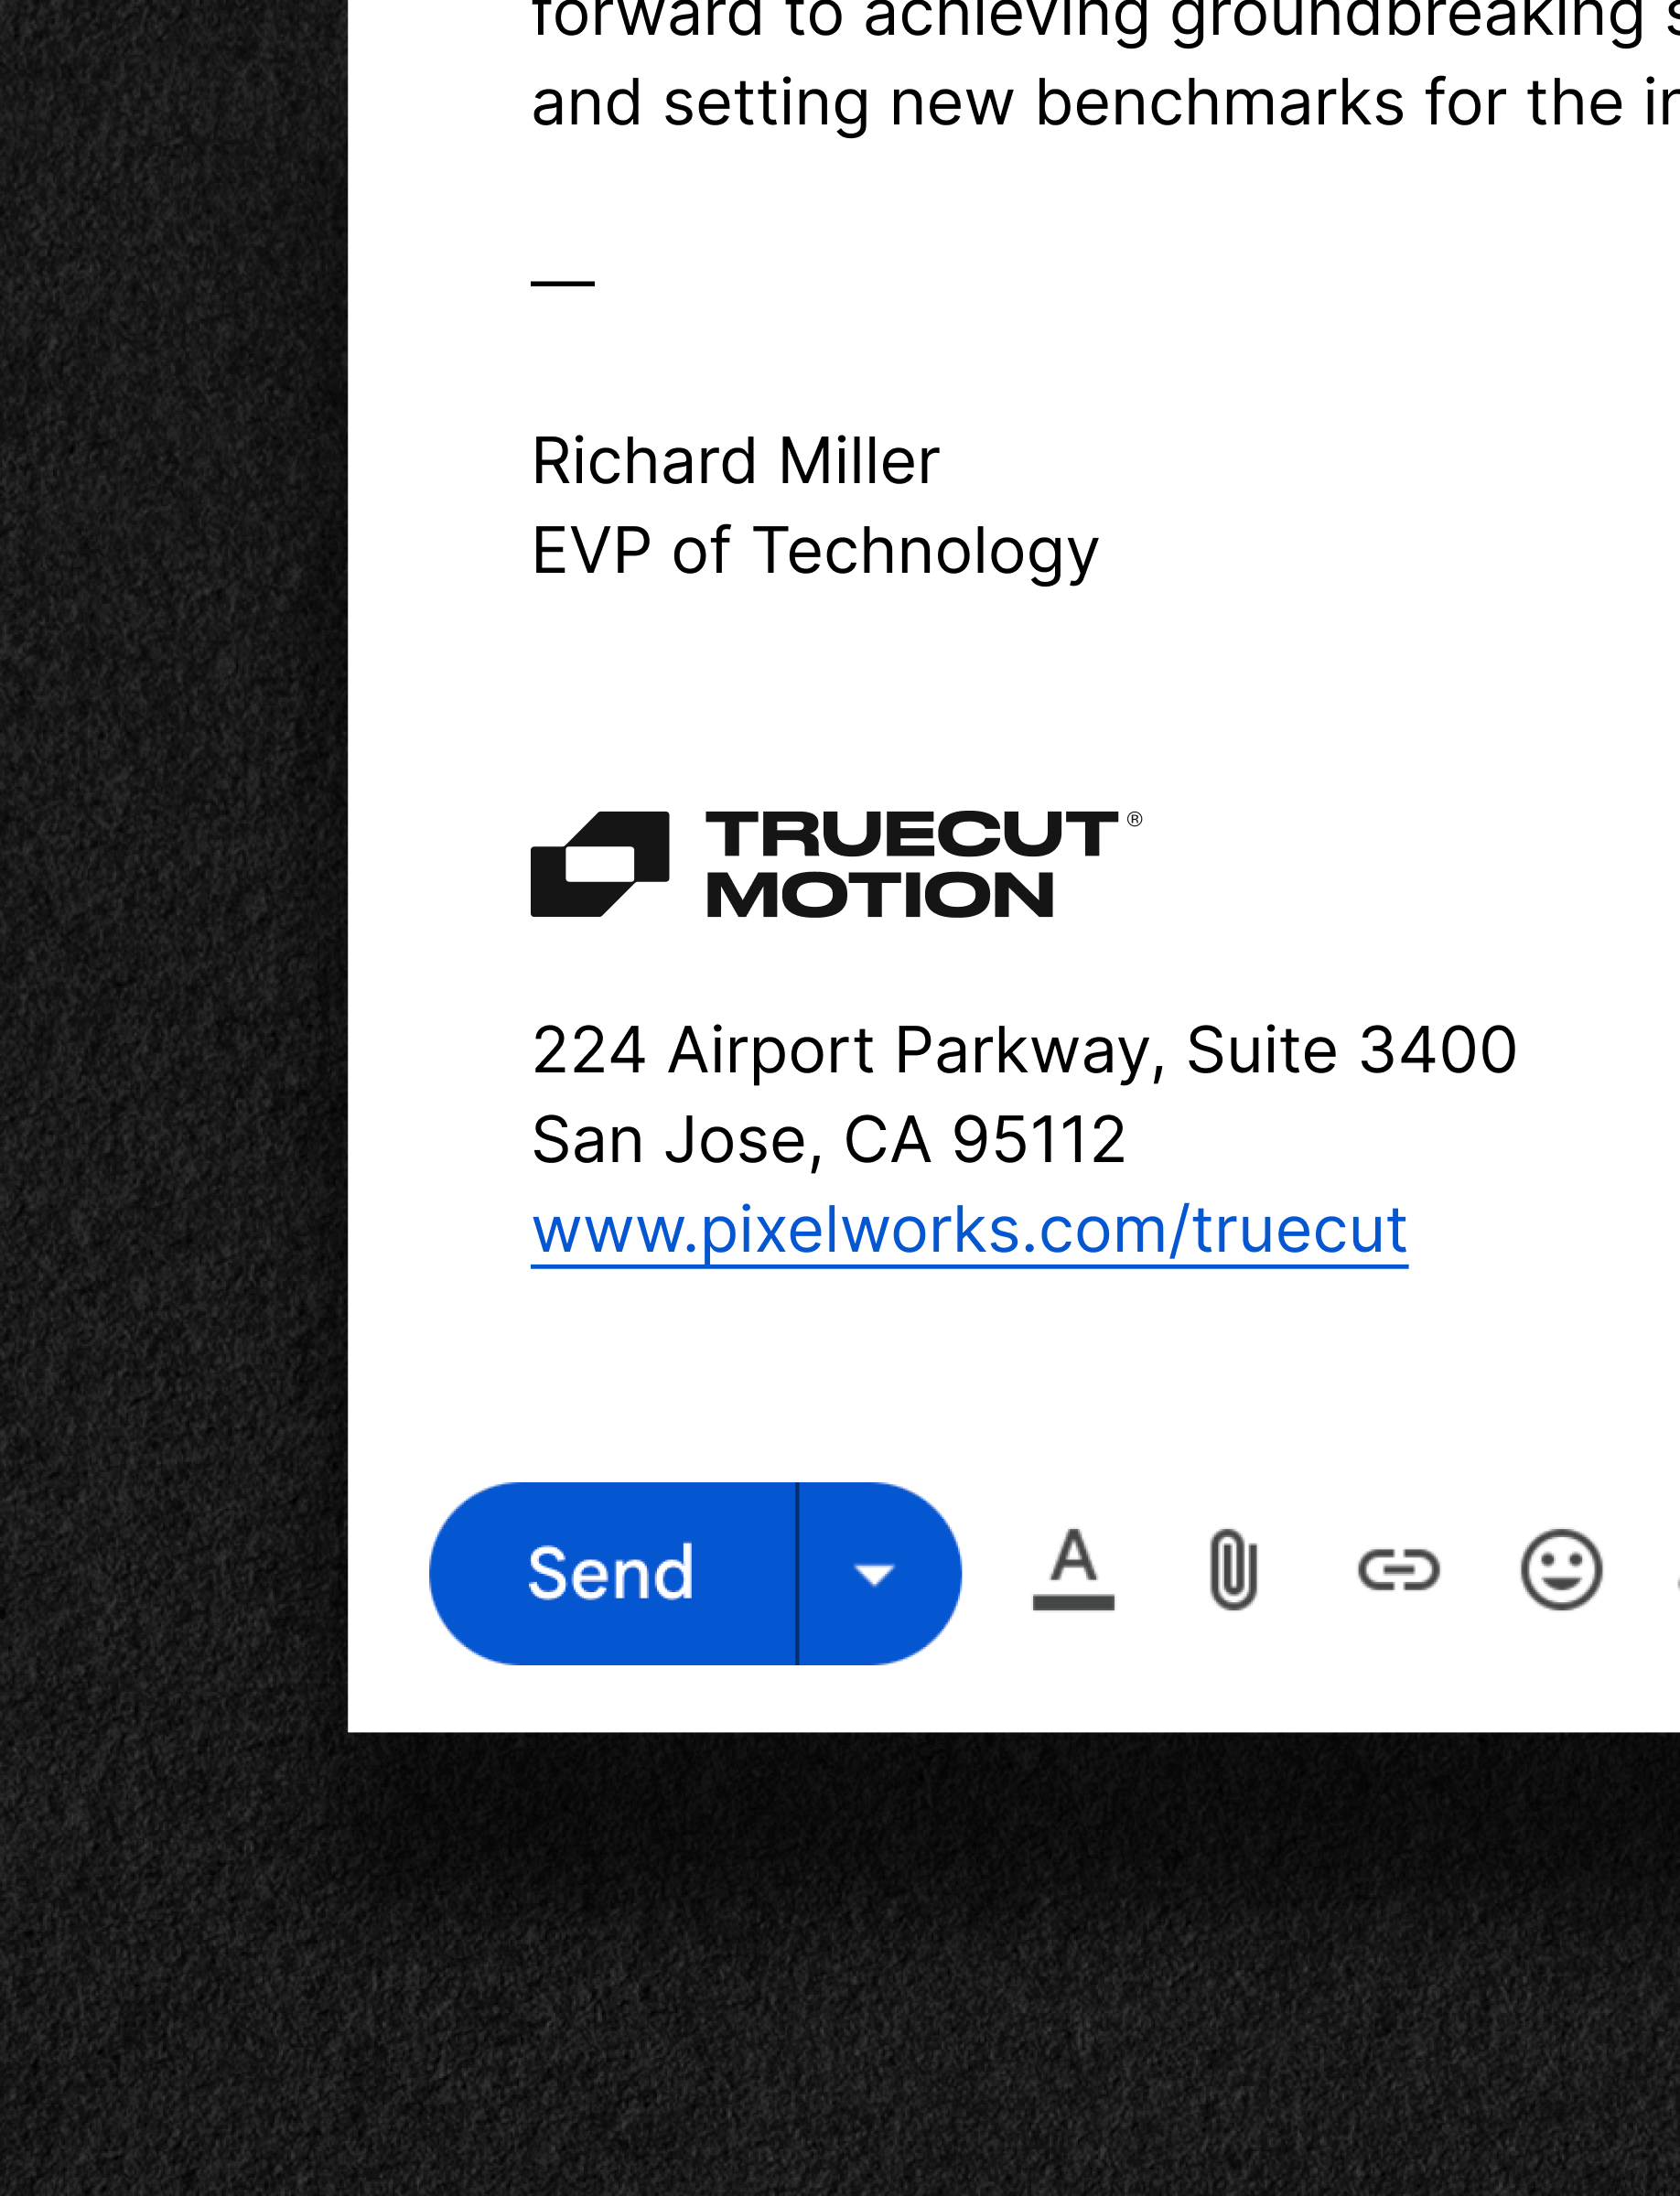 TrueCut Email Signature